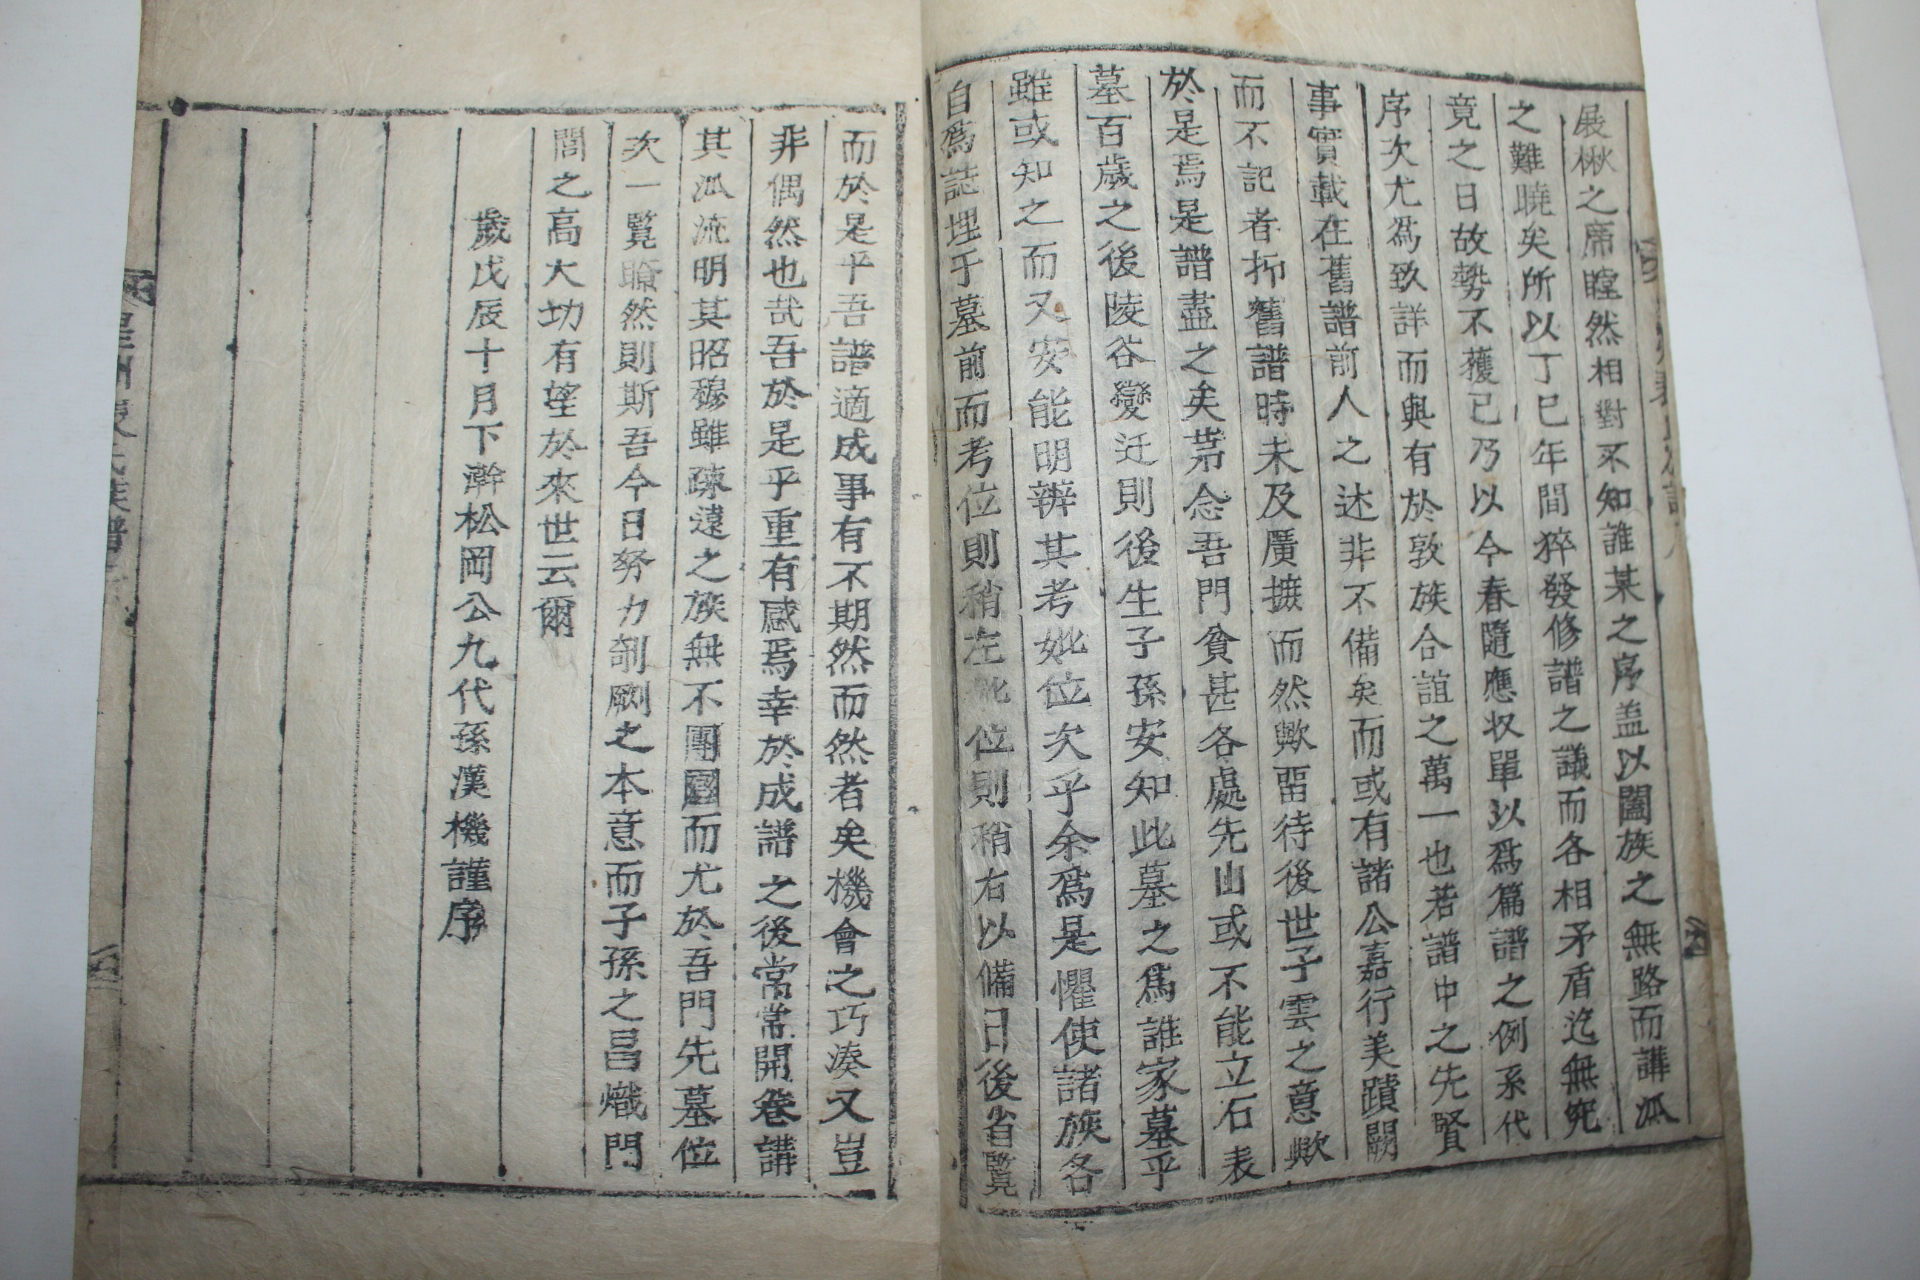 1868년 목활자본 성주배씨족보(星州裵氏族譜) 7권7책완질